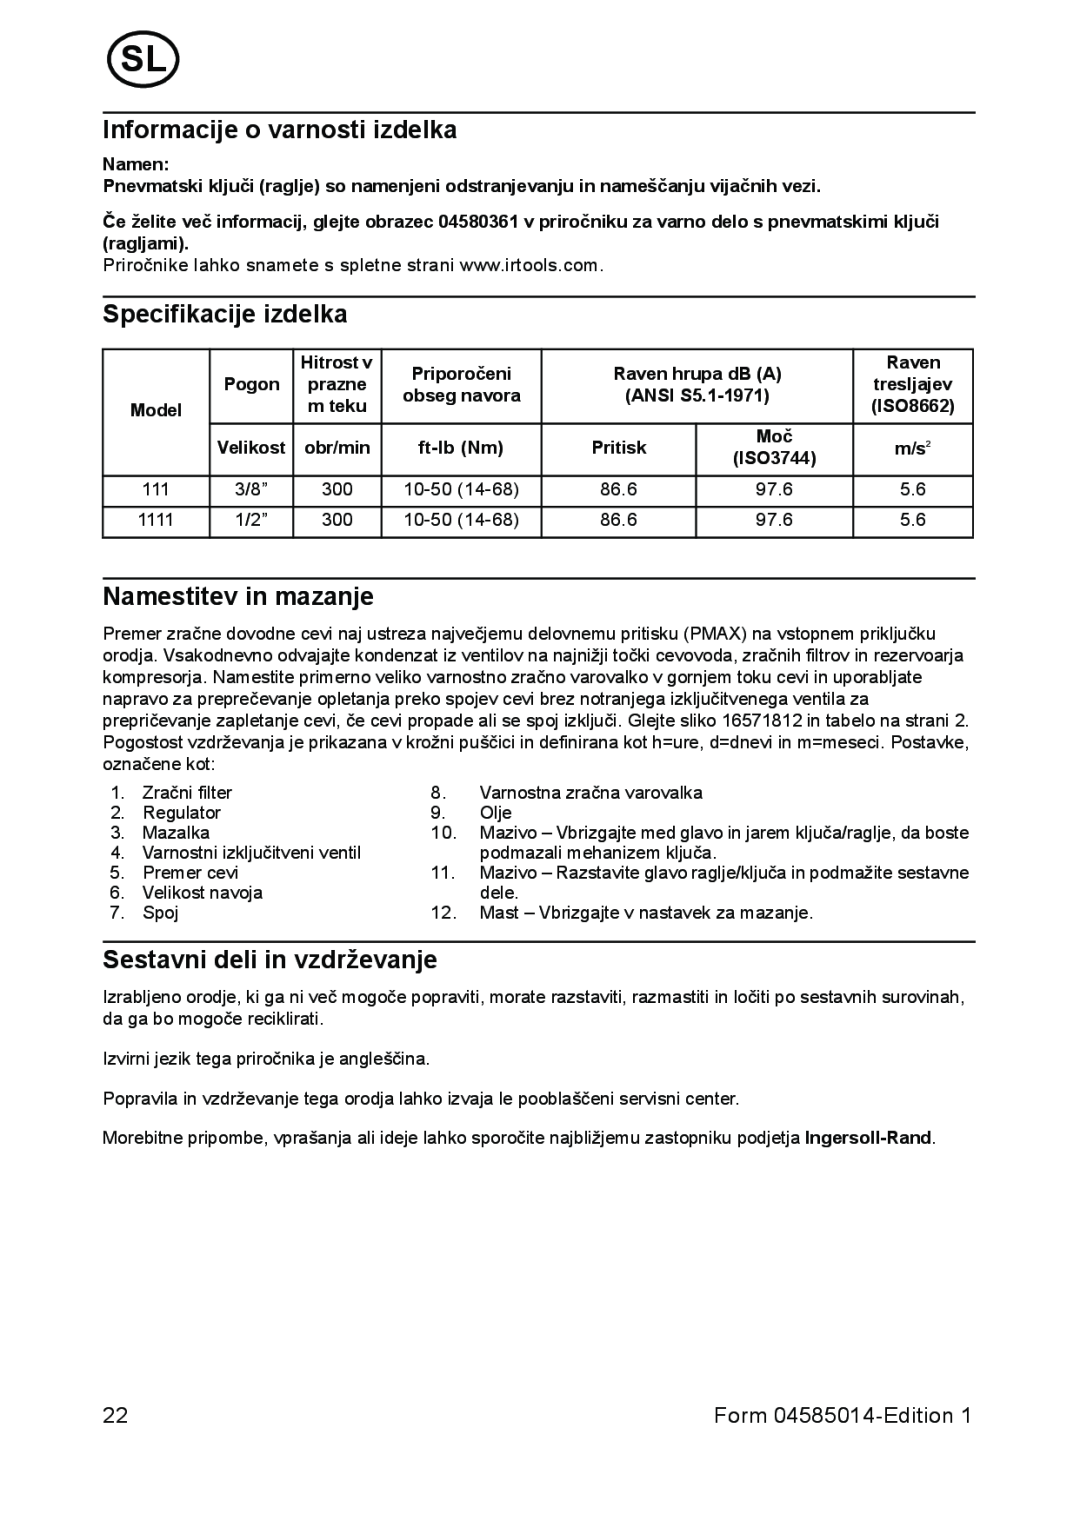 Ingersoll-Rand 1111 Informacije o varnosti izdelka, Specifikacije izdelka, Namestitev in mazanje, Form 04585014-Edition 